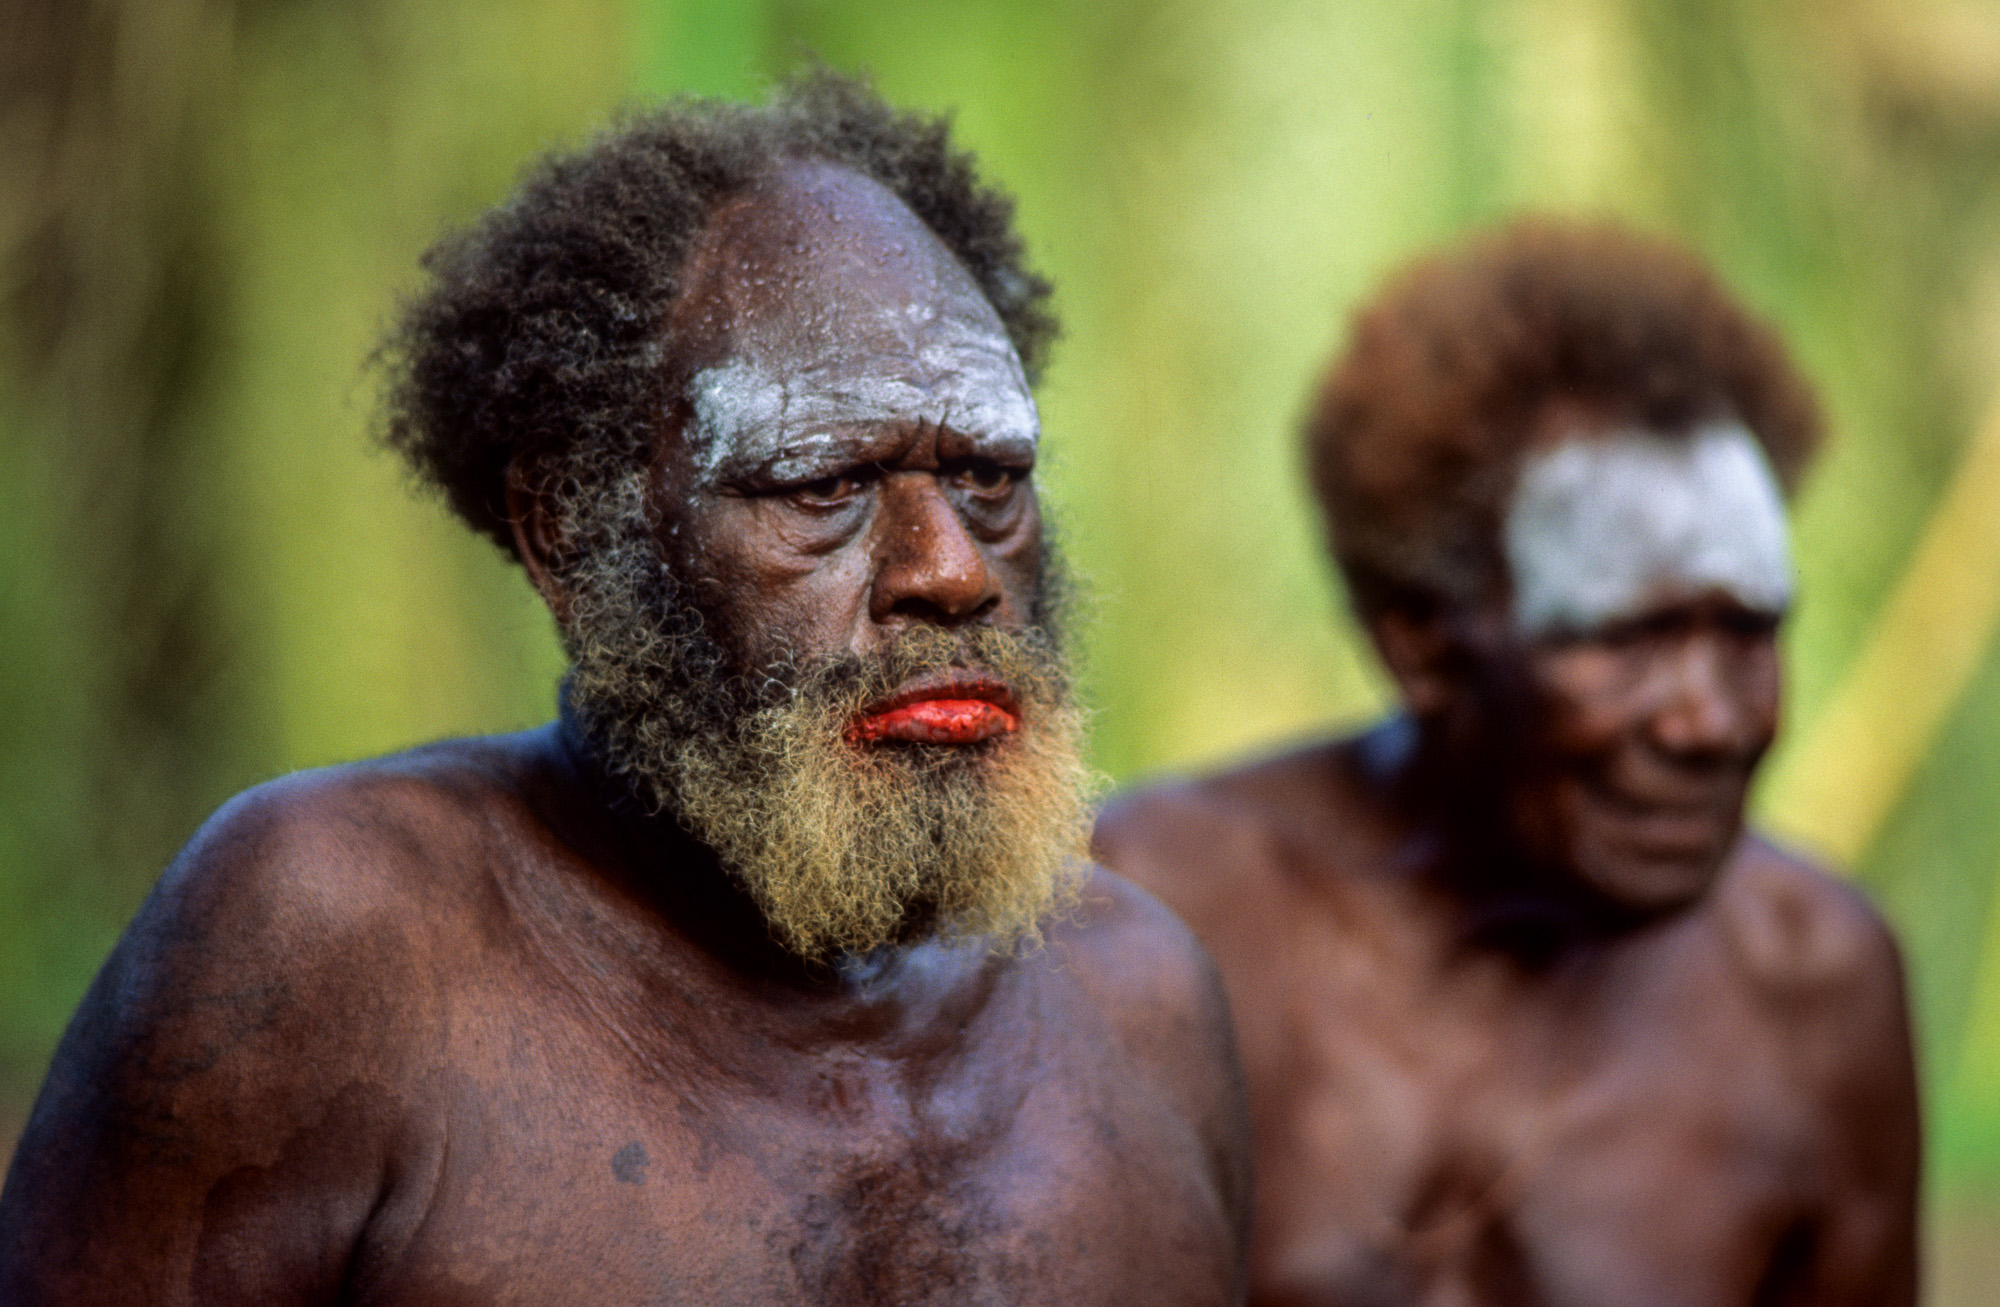 Nouvelle Guinée Papouasie. Rabaul, tribu des Tolaï. Le Big-man a les lèvres en sang car il mache du bétel additionné de chaux vive.